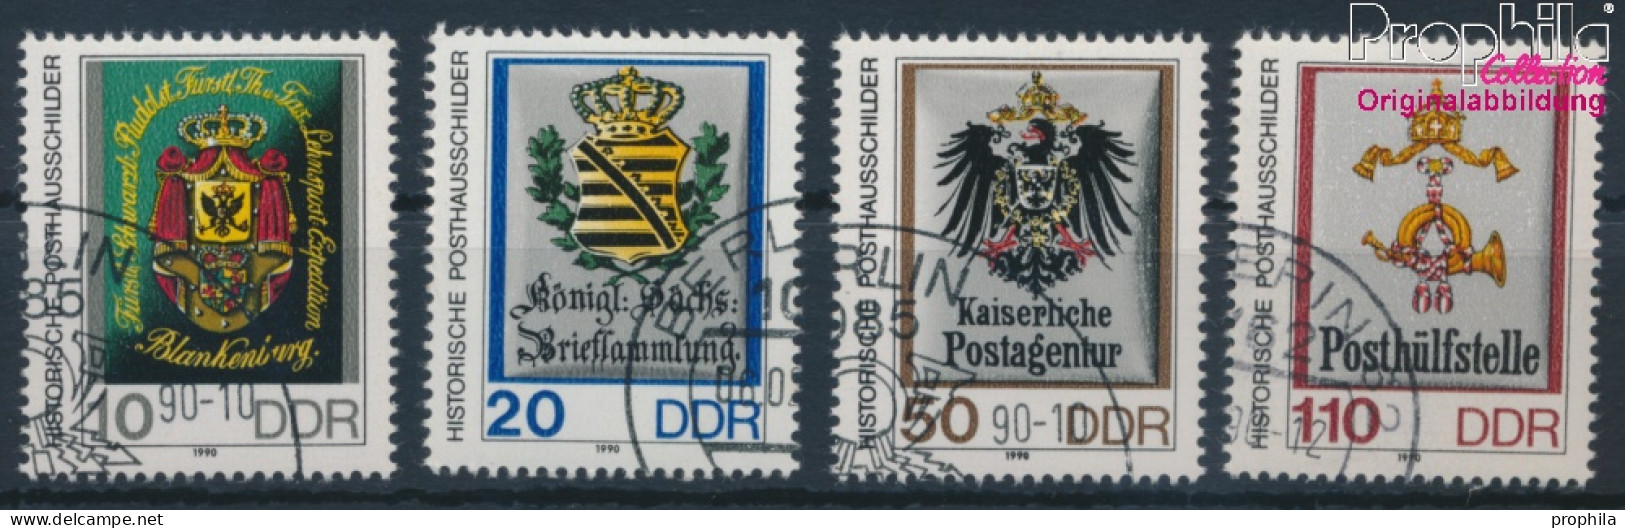 DDR 3302-3305 (kompl.Ausgabe) Gestempelt 1990 Posthausschilder Kleinformat (10405745 - Gebruikt